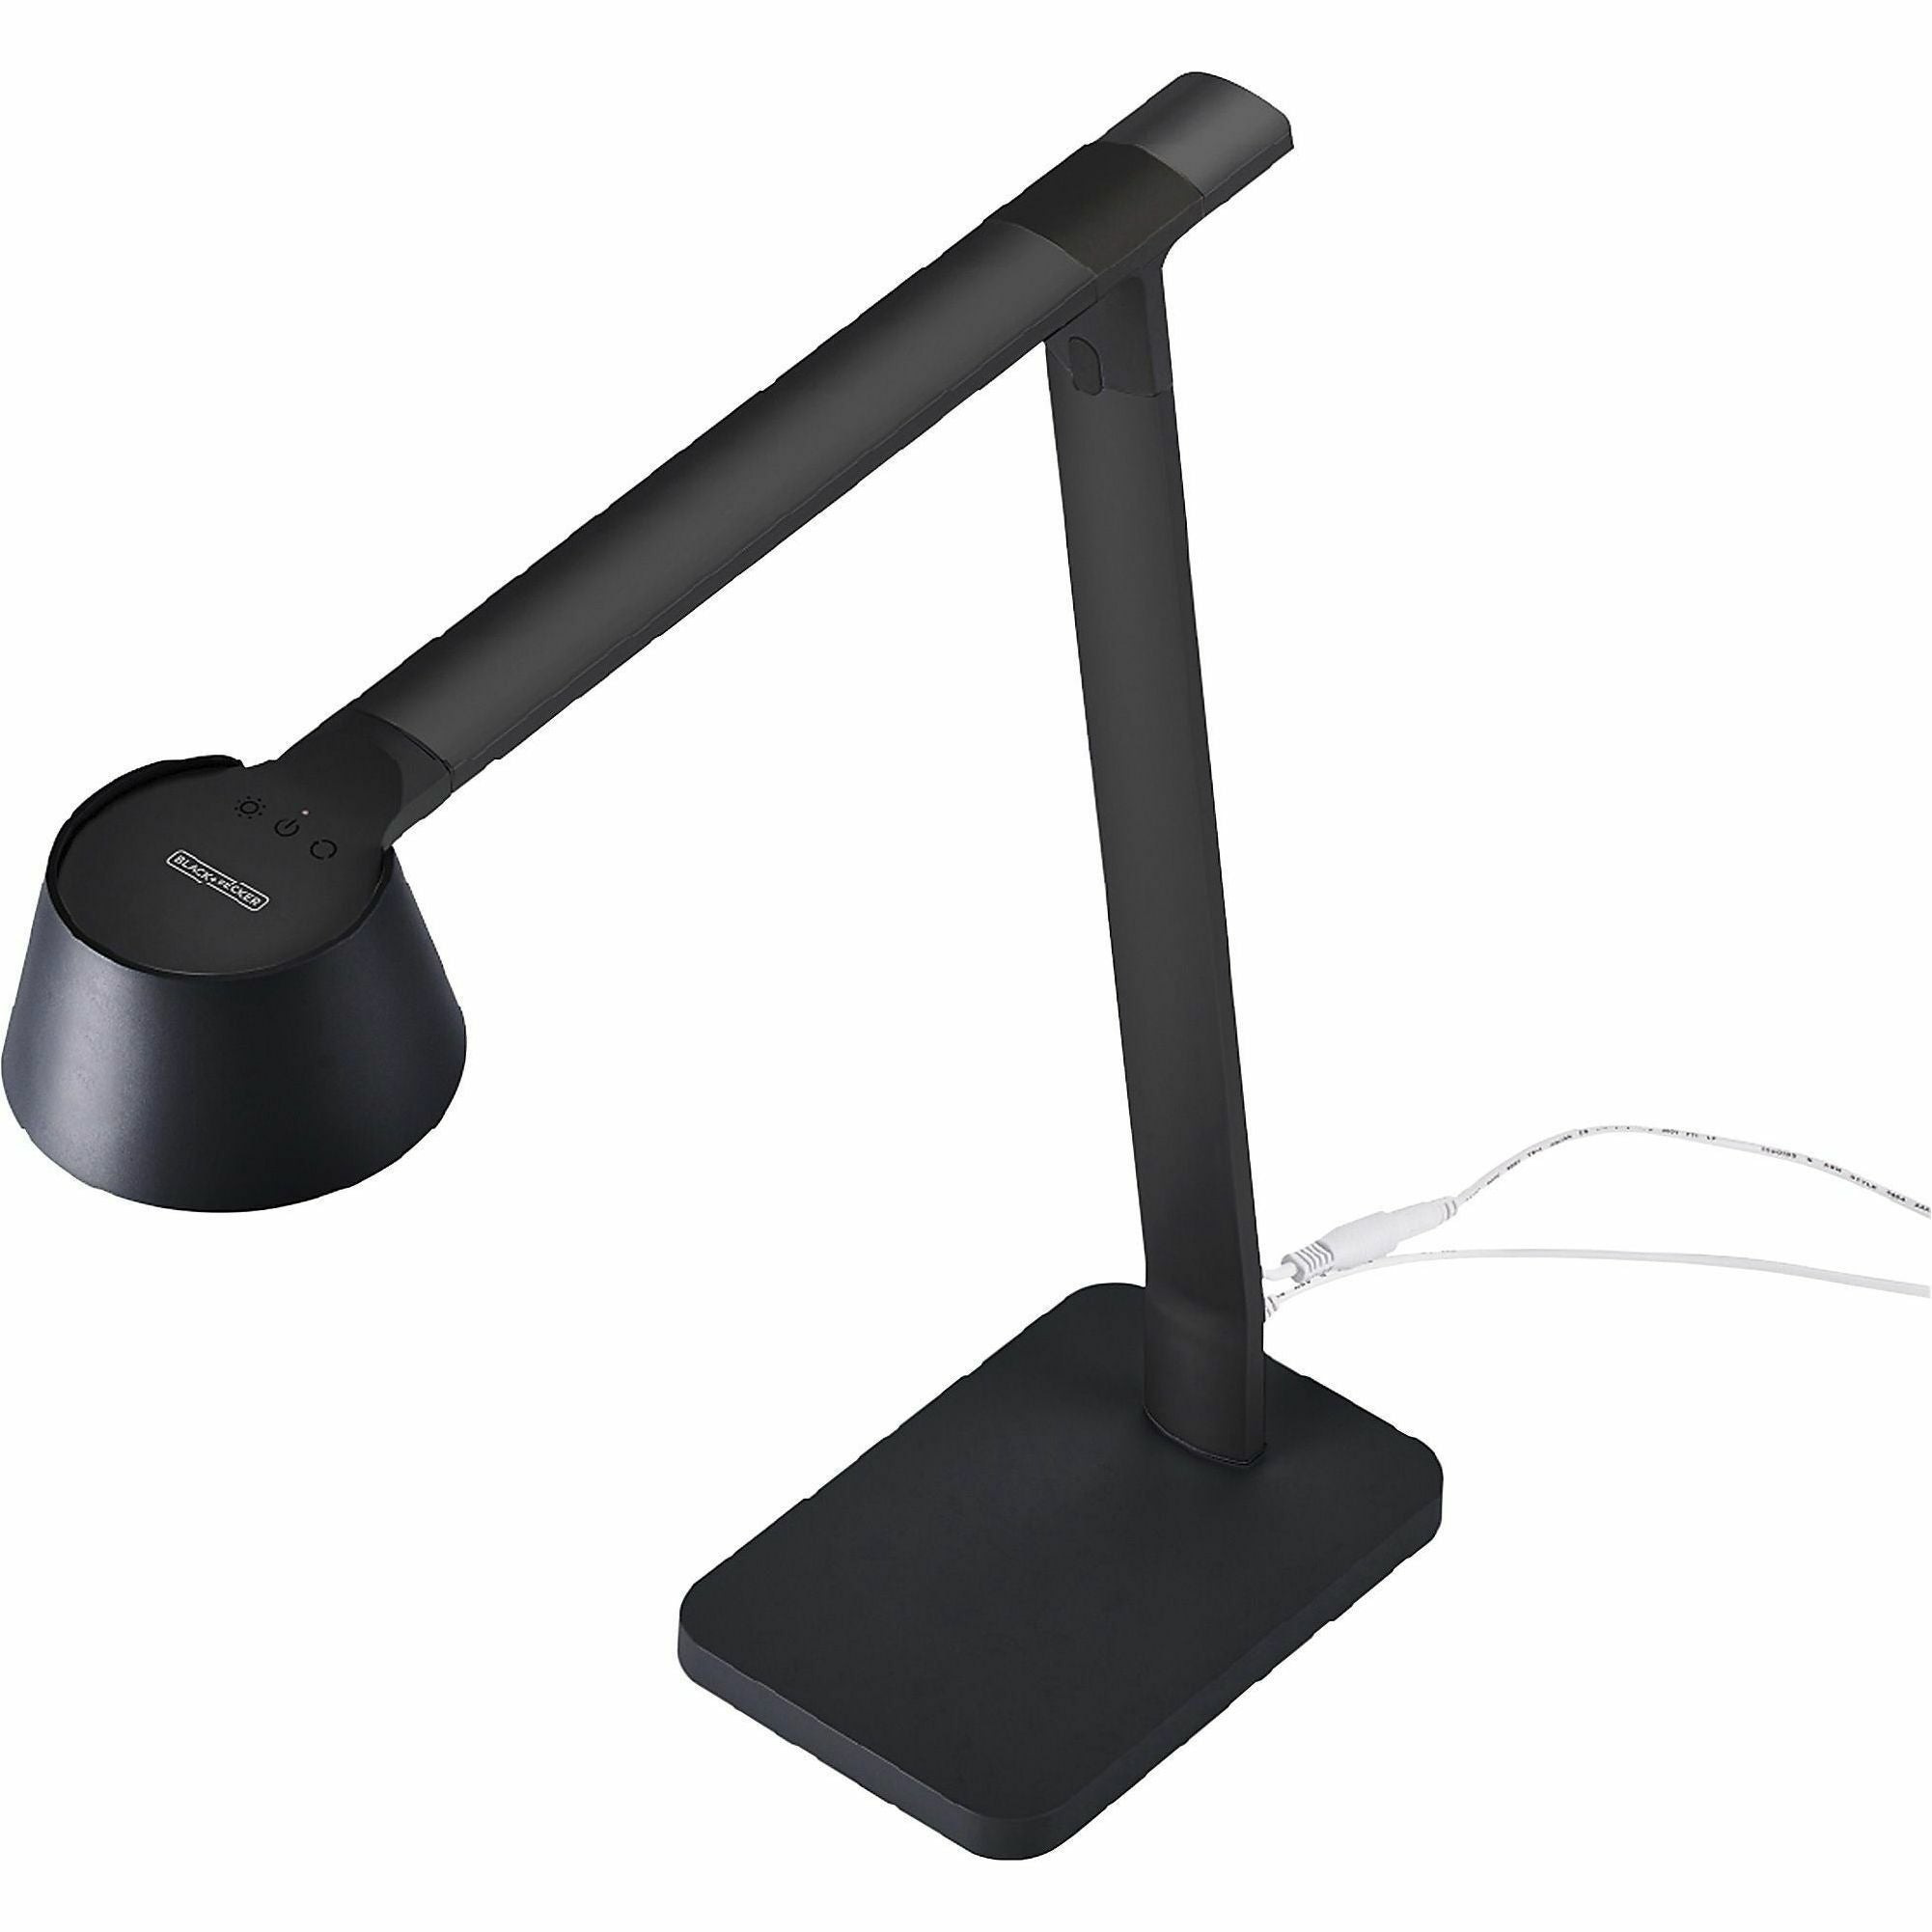 bostitch-verve-adjustable-led-desk-lamp-led-bulb-adjustable-dimmable-adjustable-brightness-clock-durable-usb-charging-swivel-base-color-changing-mode-aluminum-desk-mountable-black-for-desk-alexa-supported_bos2200usbsmbk - 6